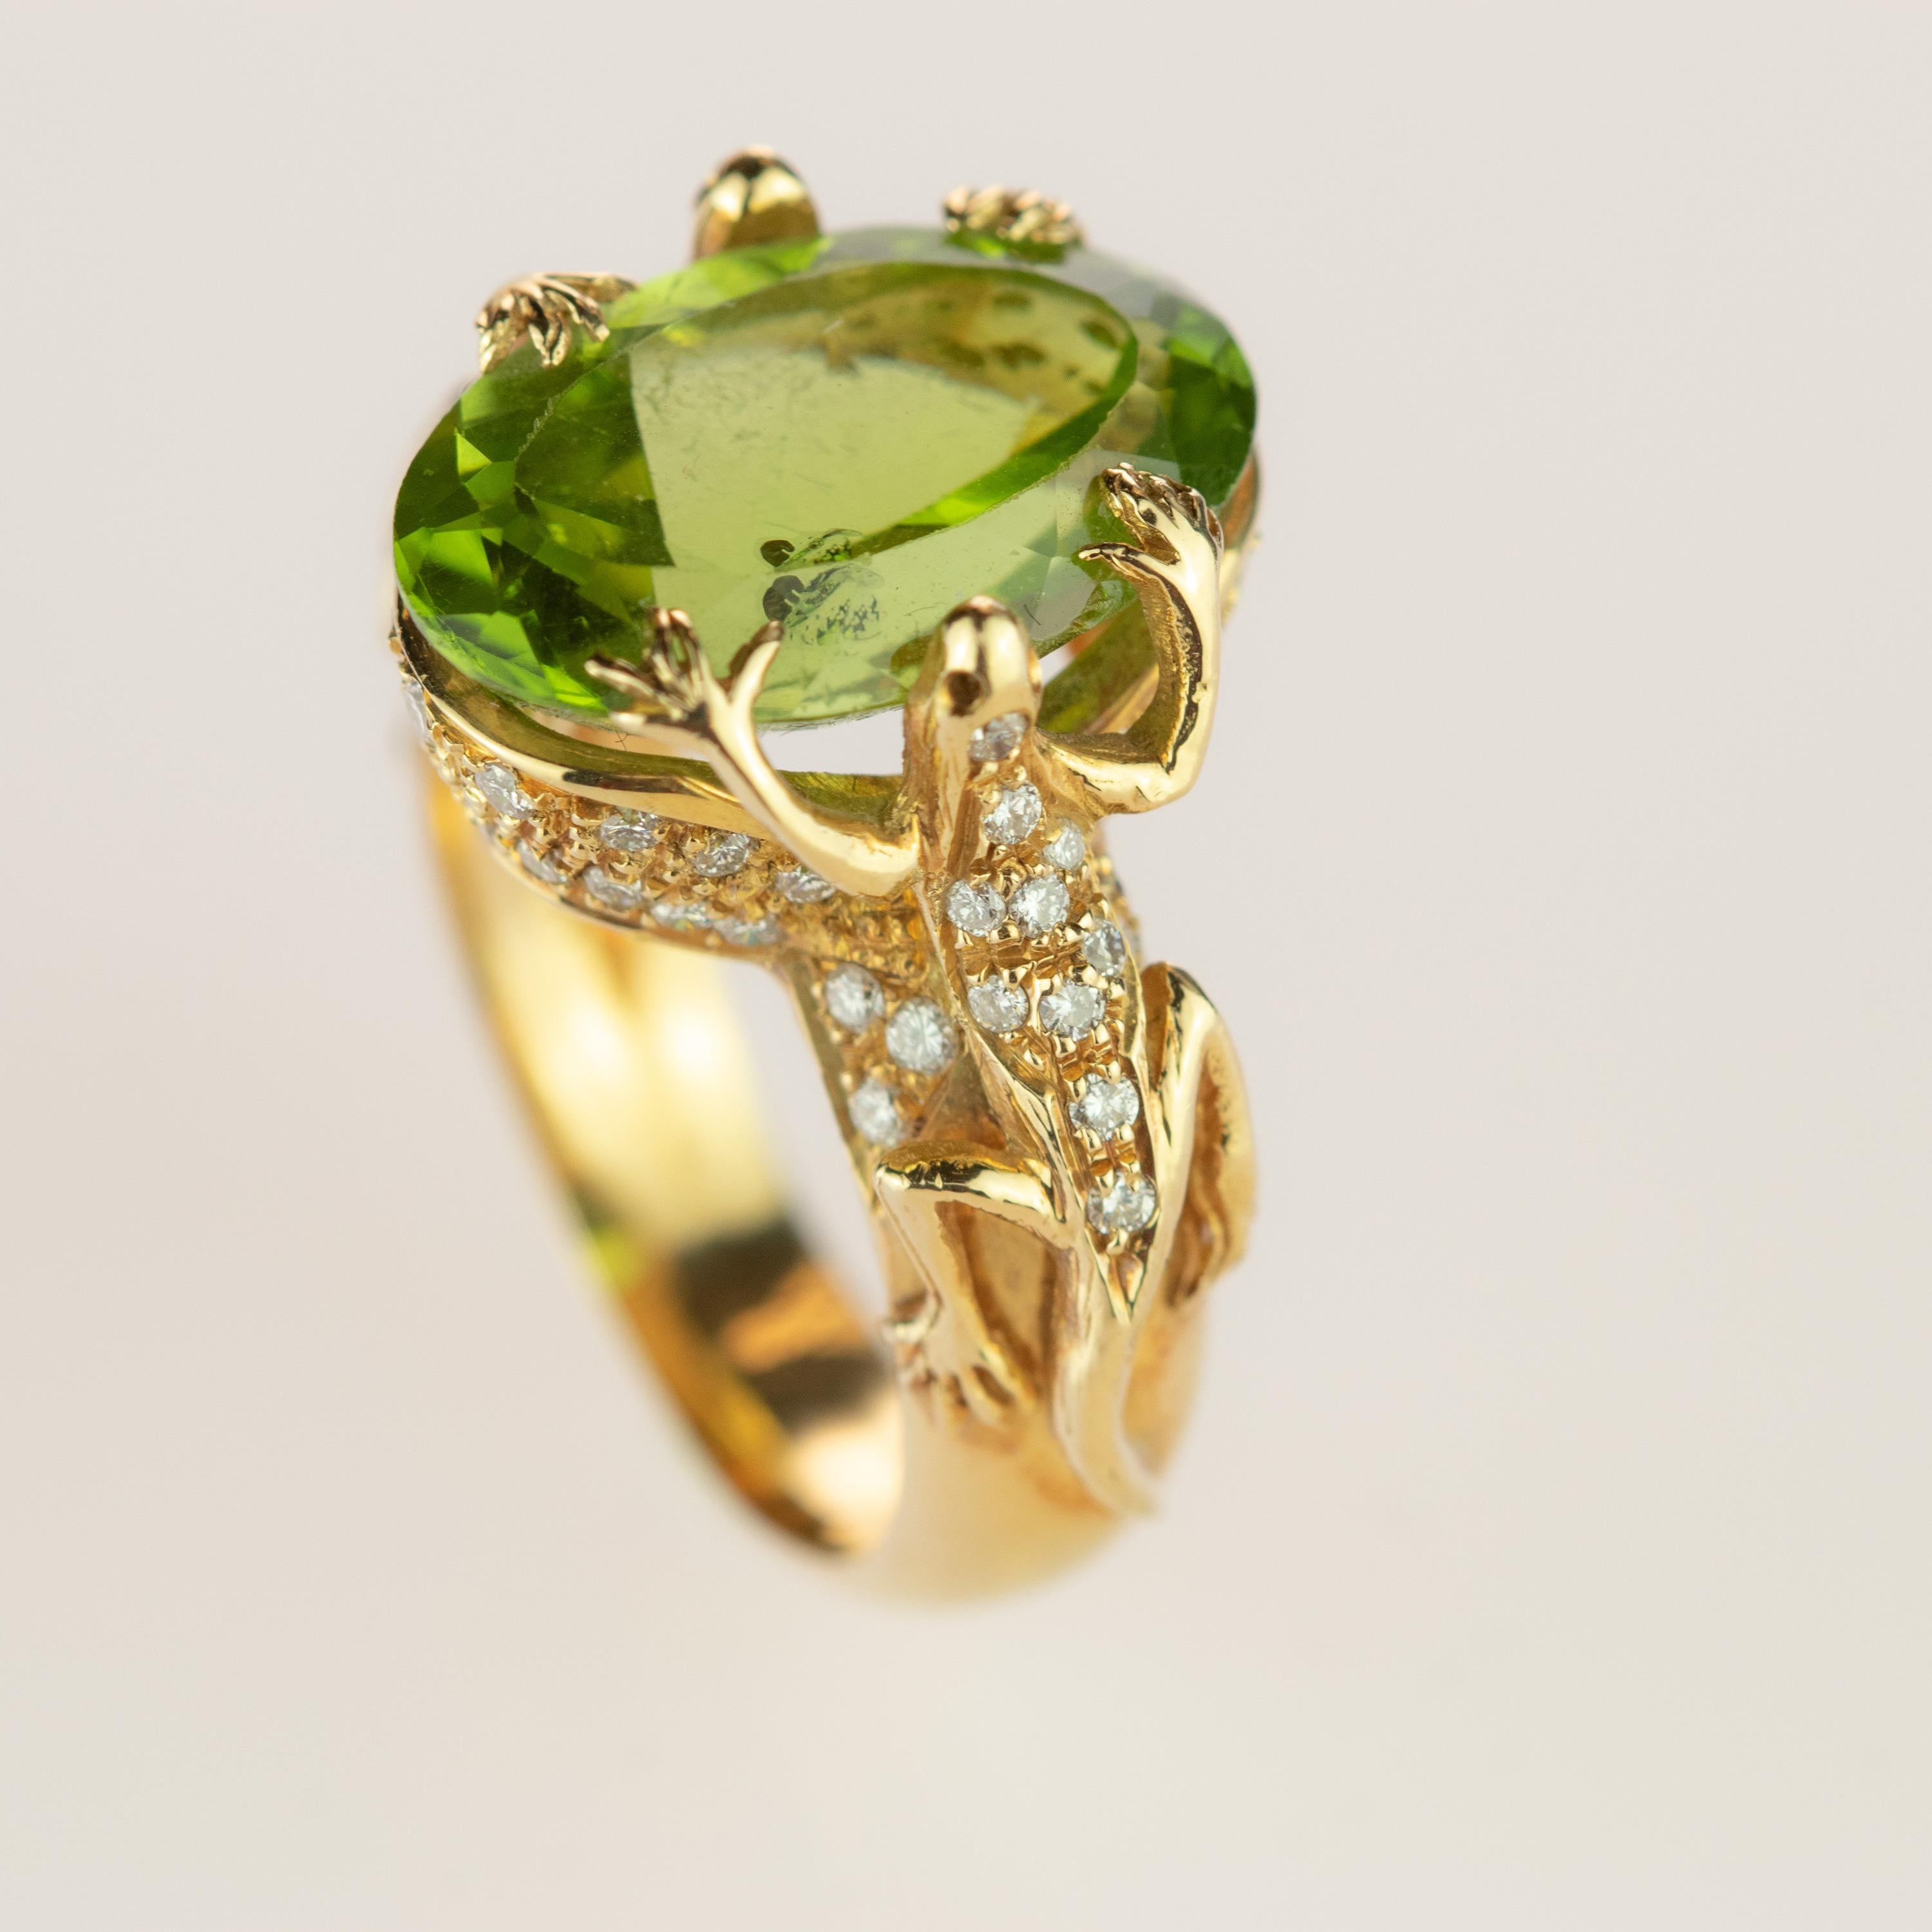 Round Cut Intini Jewels Lizard Salamander Peridot Diamond 18 Karat Gold Vintage Ring For Sale